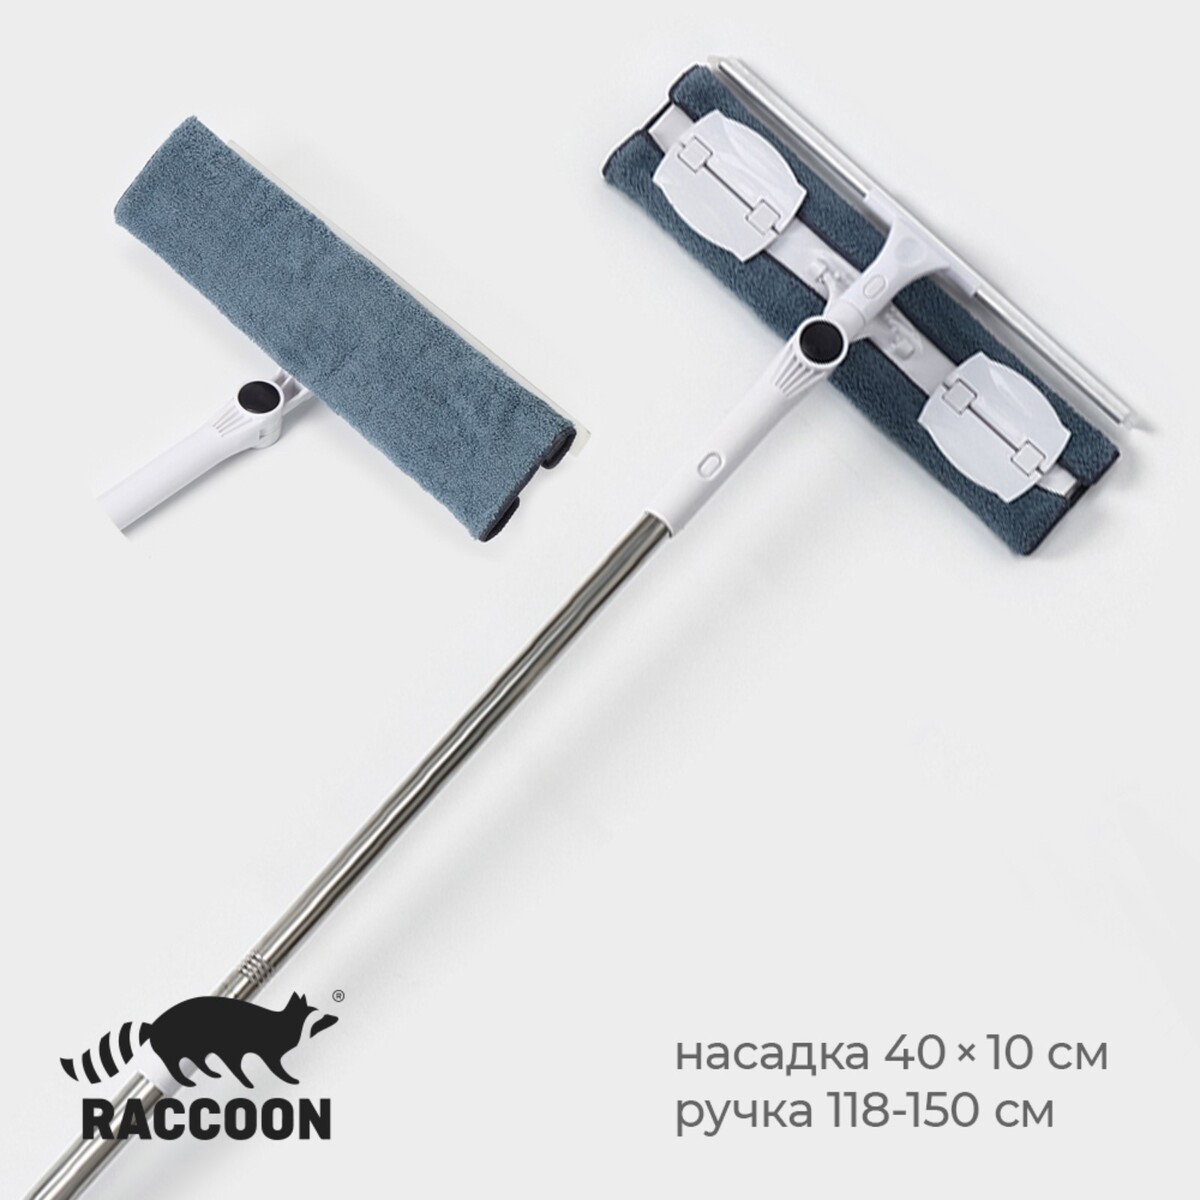 Окномойка бабочка raccoon, стальная телескопическая ручка, микрофибра, поворот на 180°, 40×10×118(150) см окномойка бабочка raccoon стальная телескопическая ручка микрофибра поворот на 180° 27×7×114 137 см